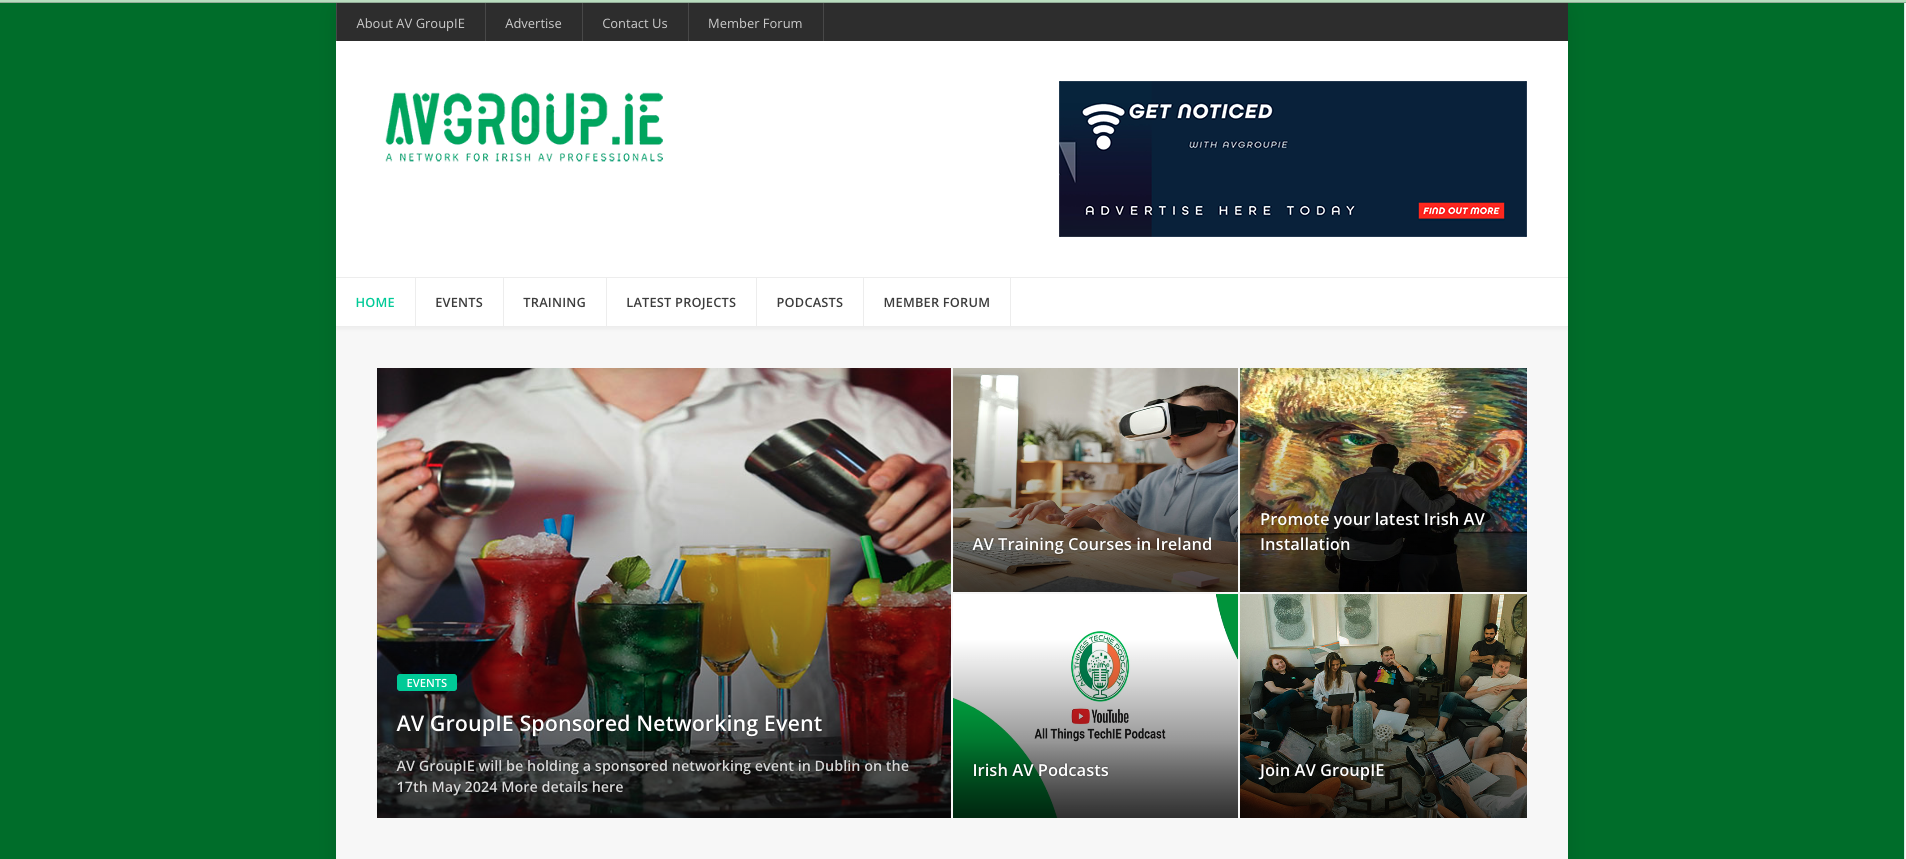 AV GroupIE - A Network for Irish AV Professionals